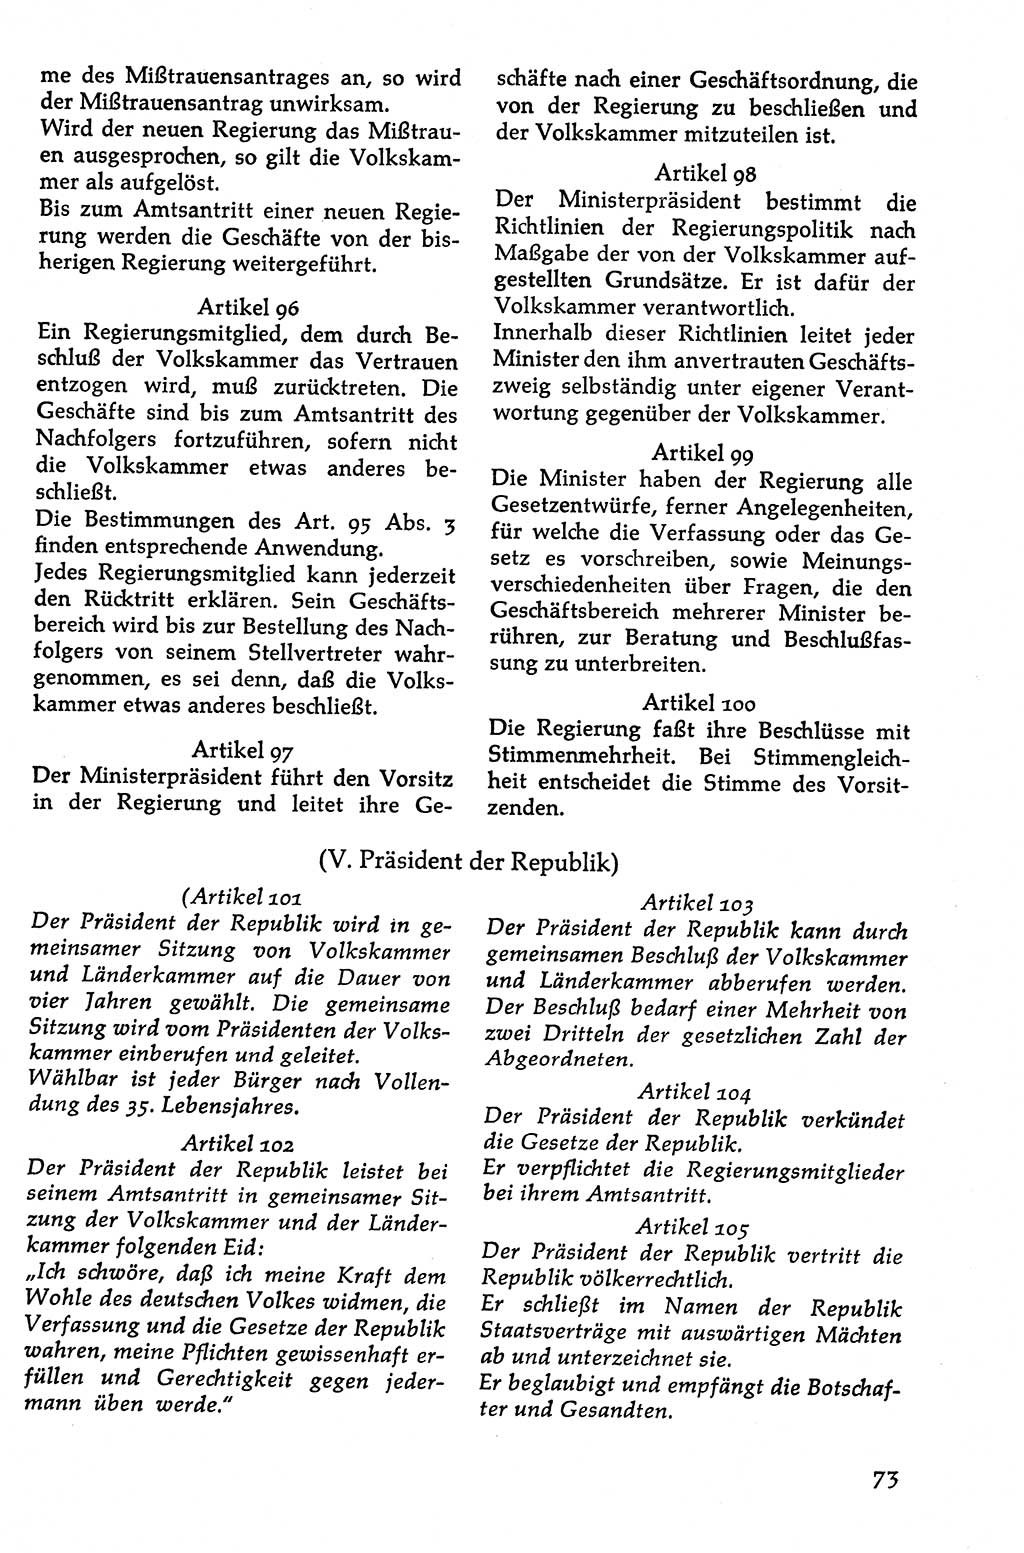 Volksdemokratische Ordnung in Mitteldeutschland [Deutsche Demokratische Republik (DDR)], Texte zur verfassungsrechtlichen Situation 1963, Seite 73 (Volksdem. Ordn. Md. DDR 1963, S. 73)